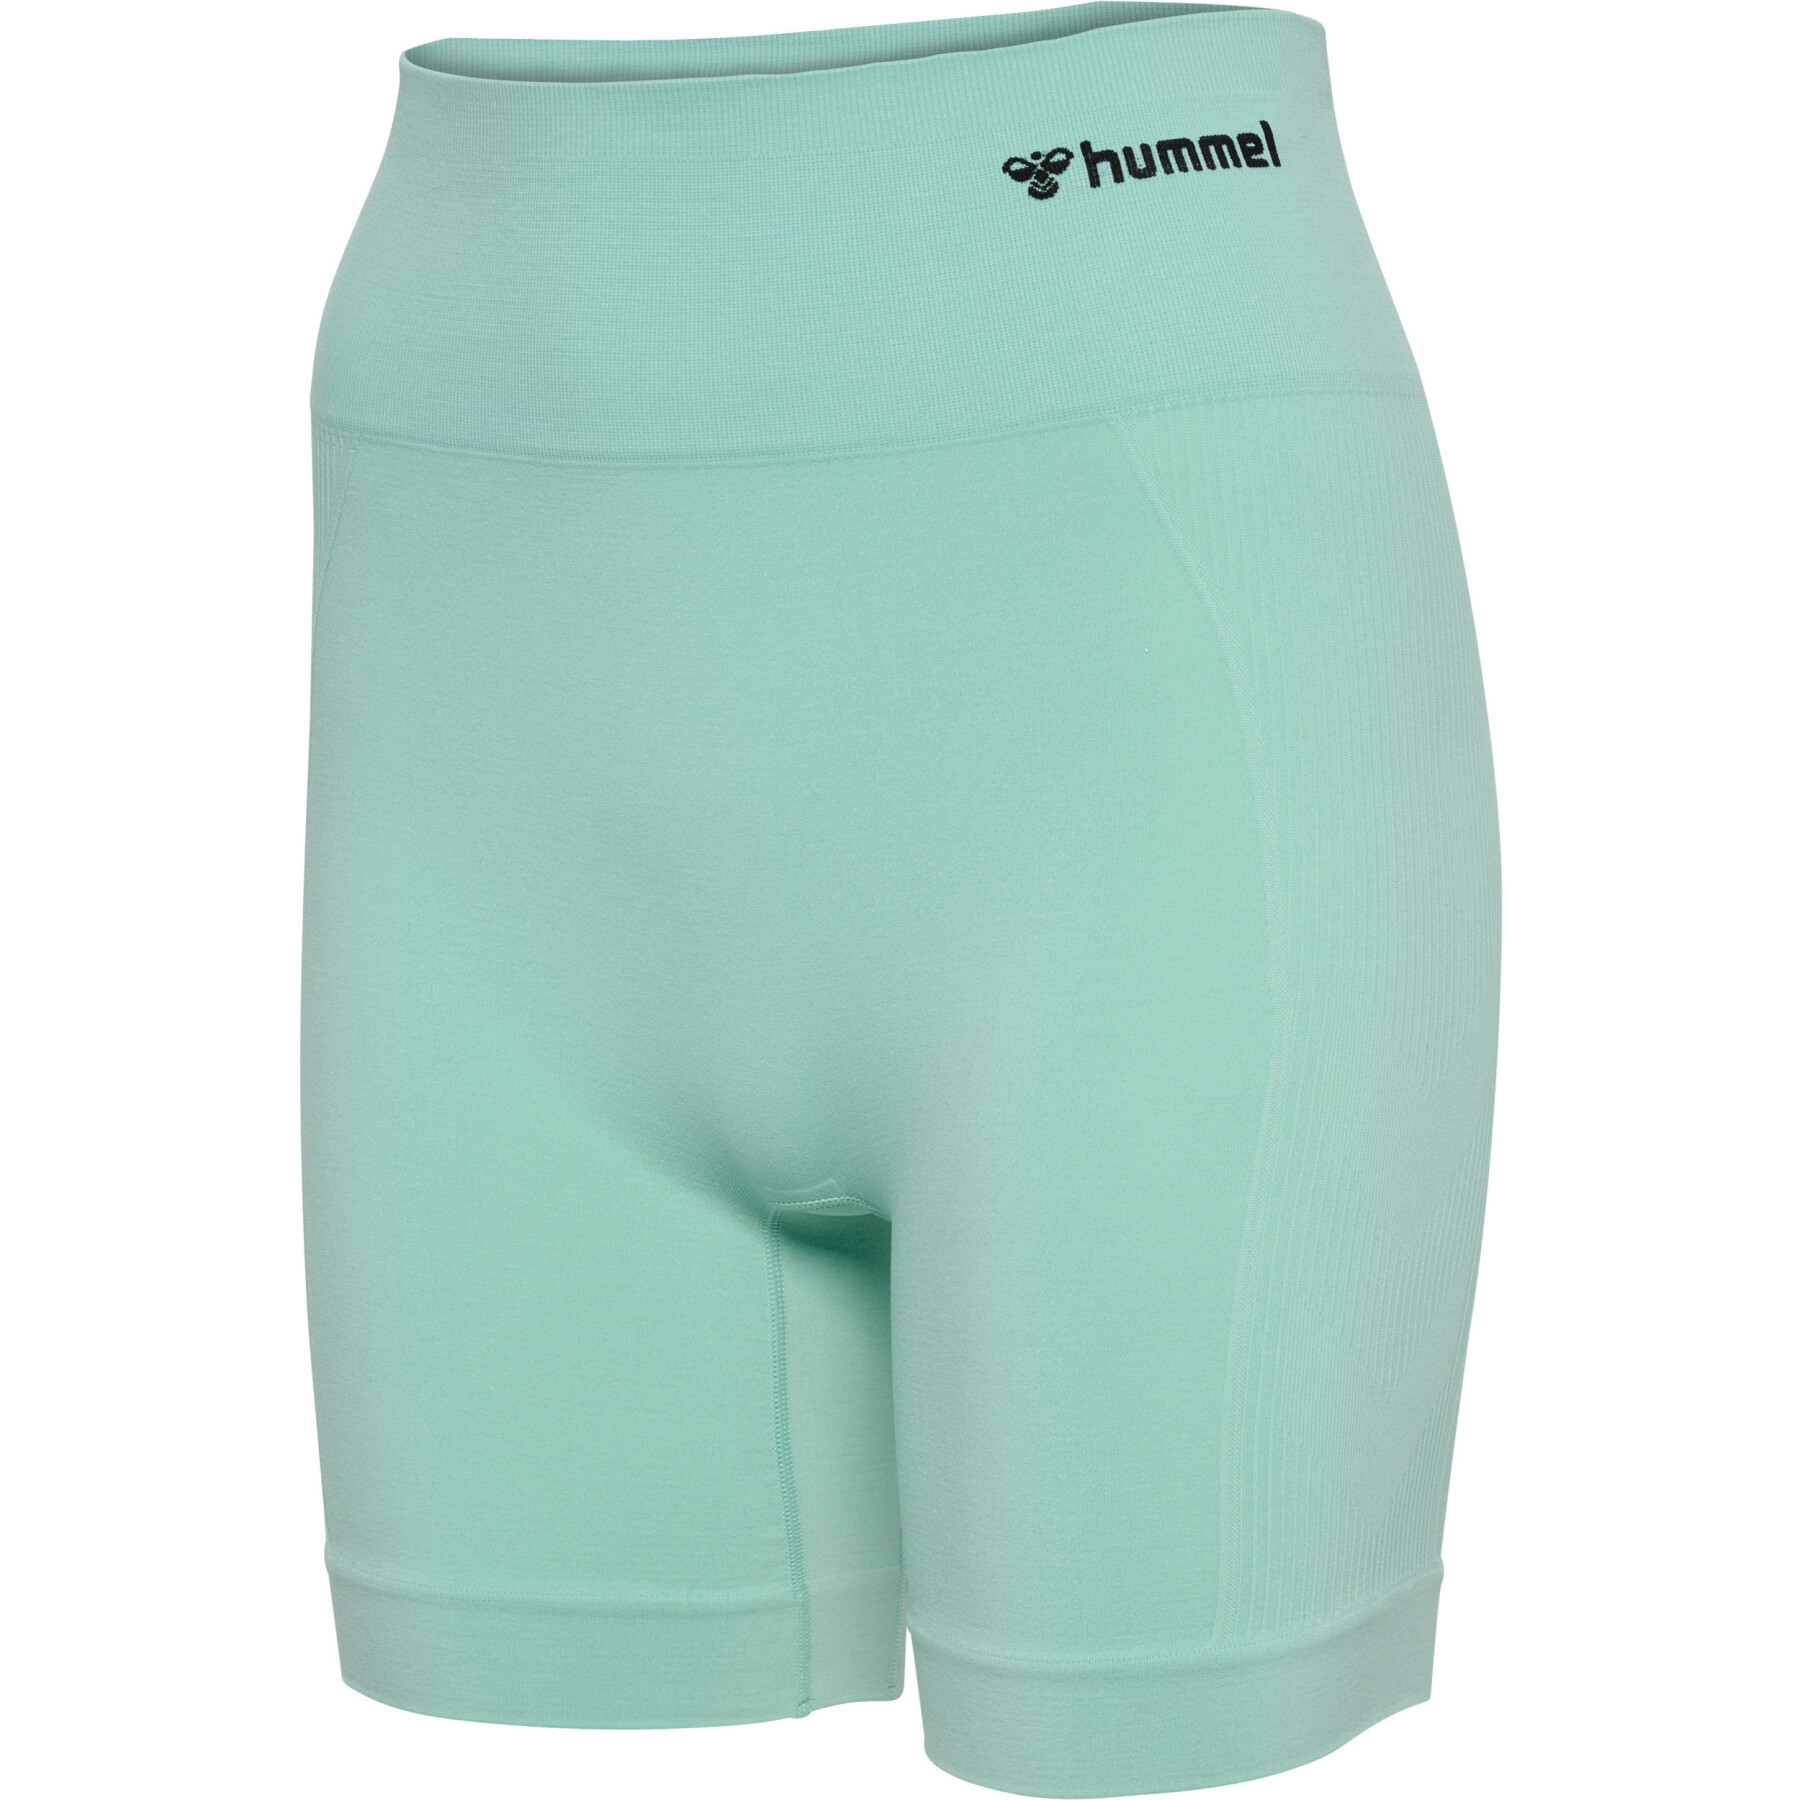 hummel Seamless cycling shorts for women TIF : : Fashion